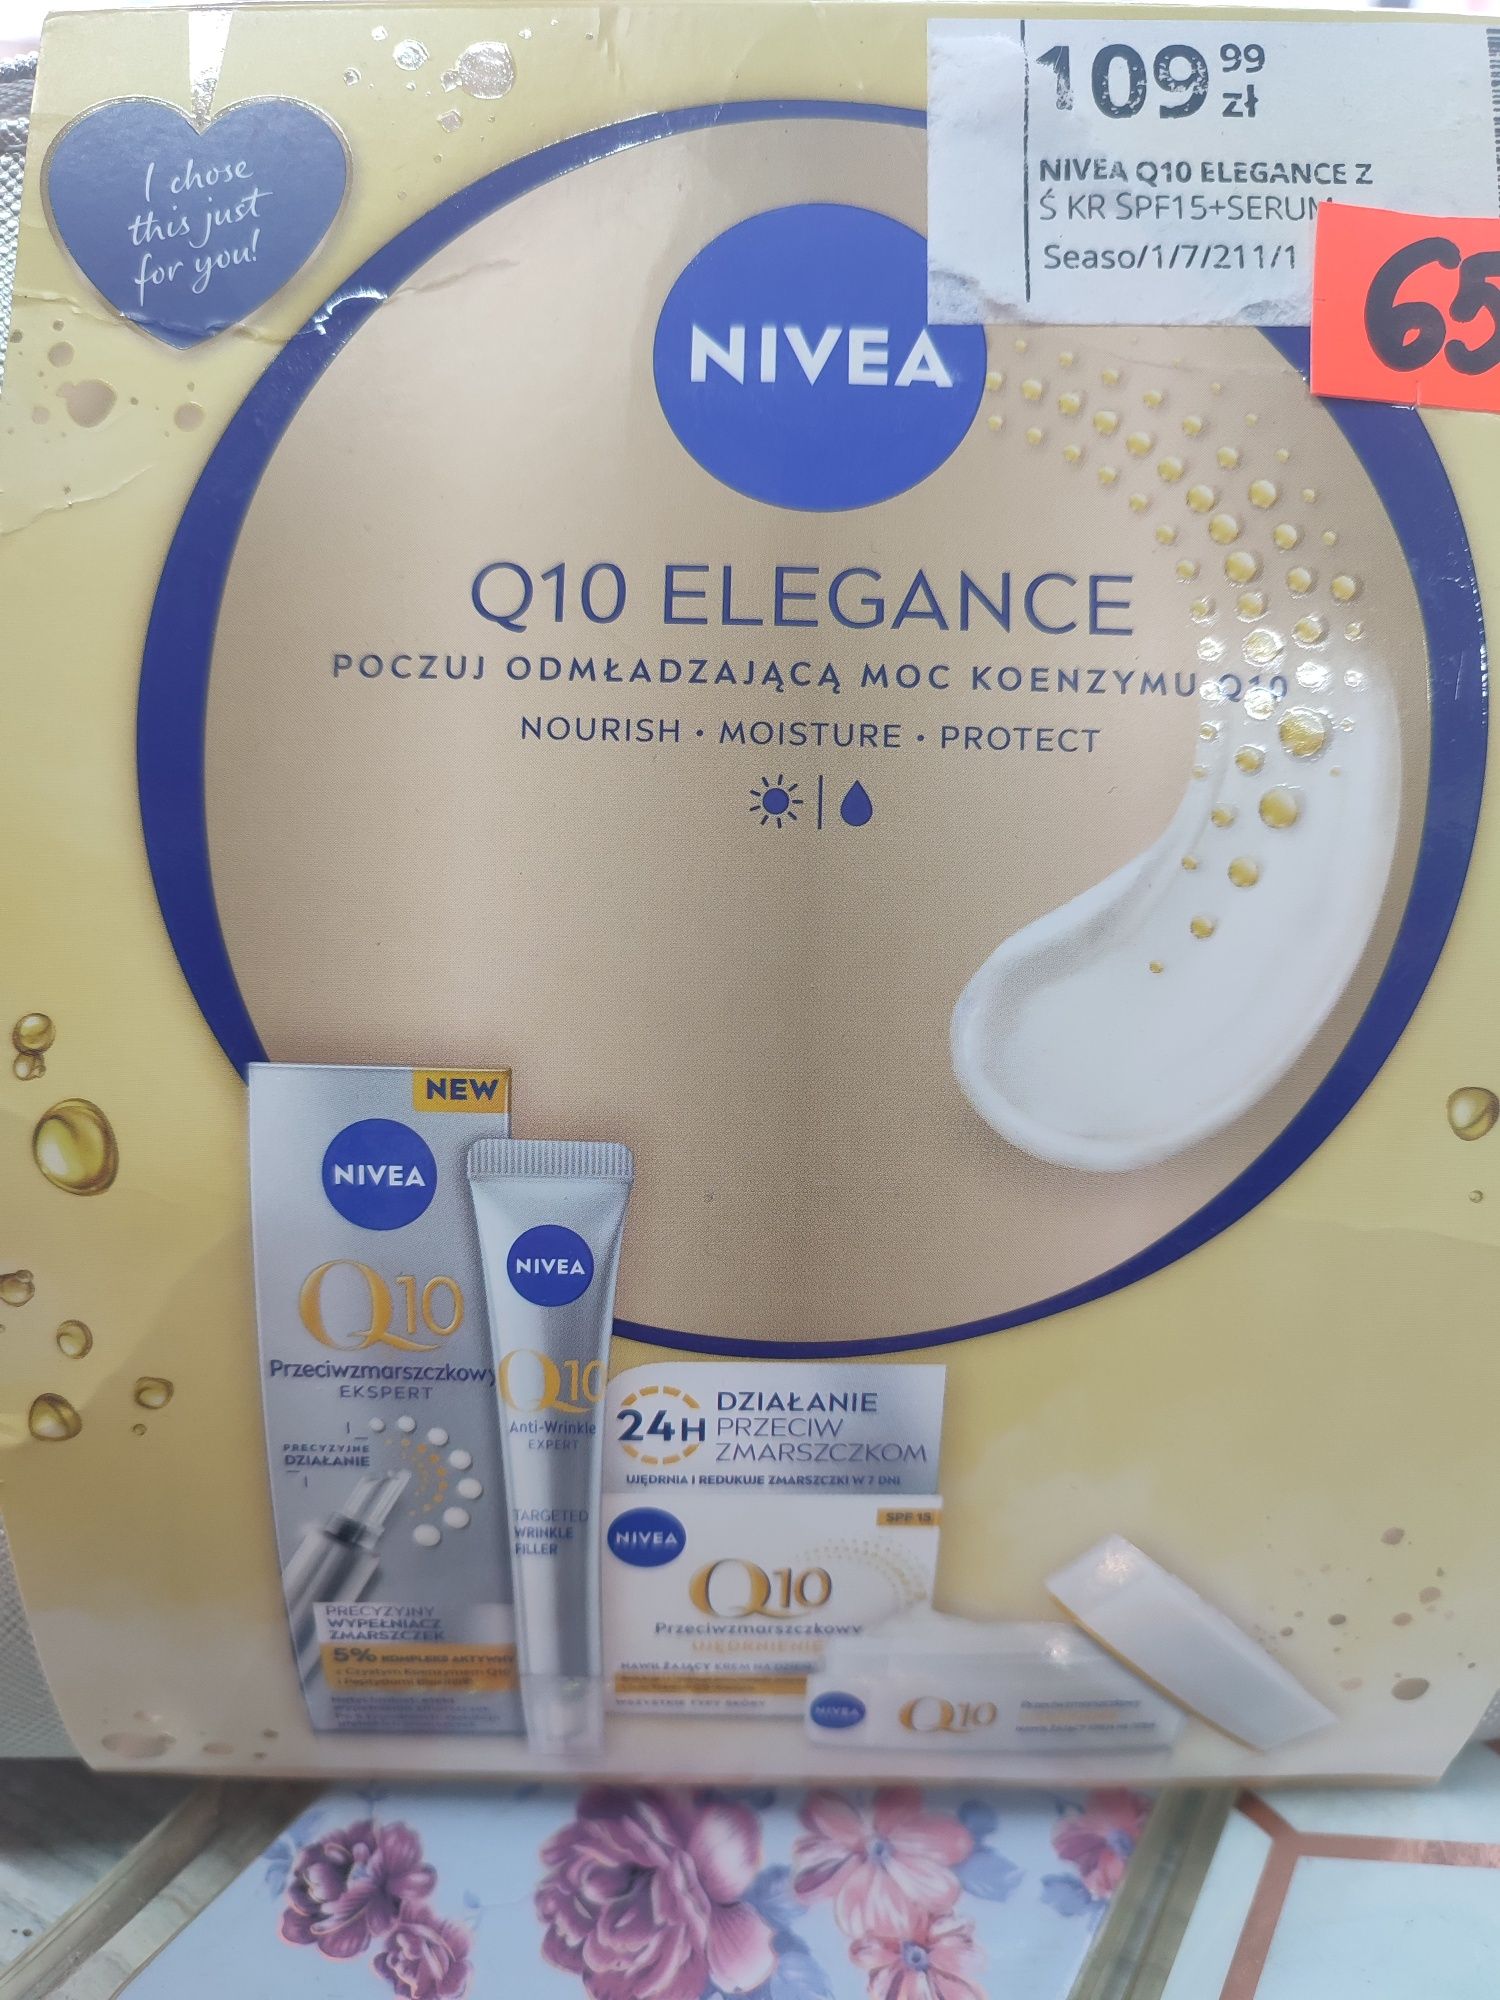 Nive Q10 elegance zestaw kosmetyków w pięknej kosmetyczce super cena!